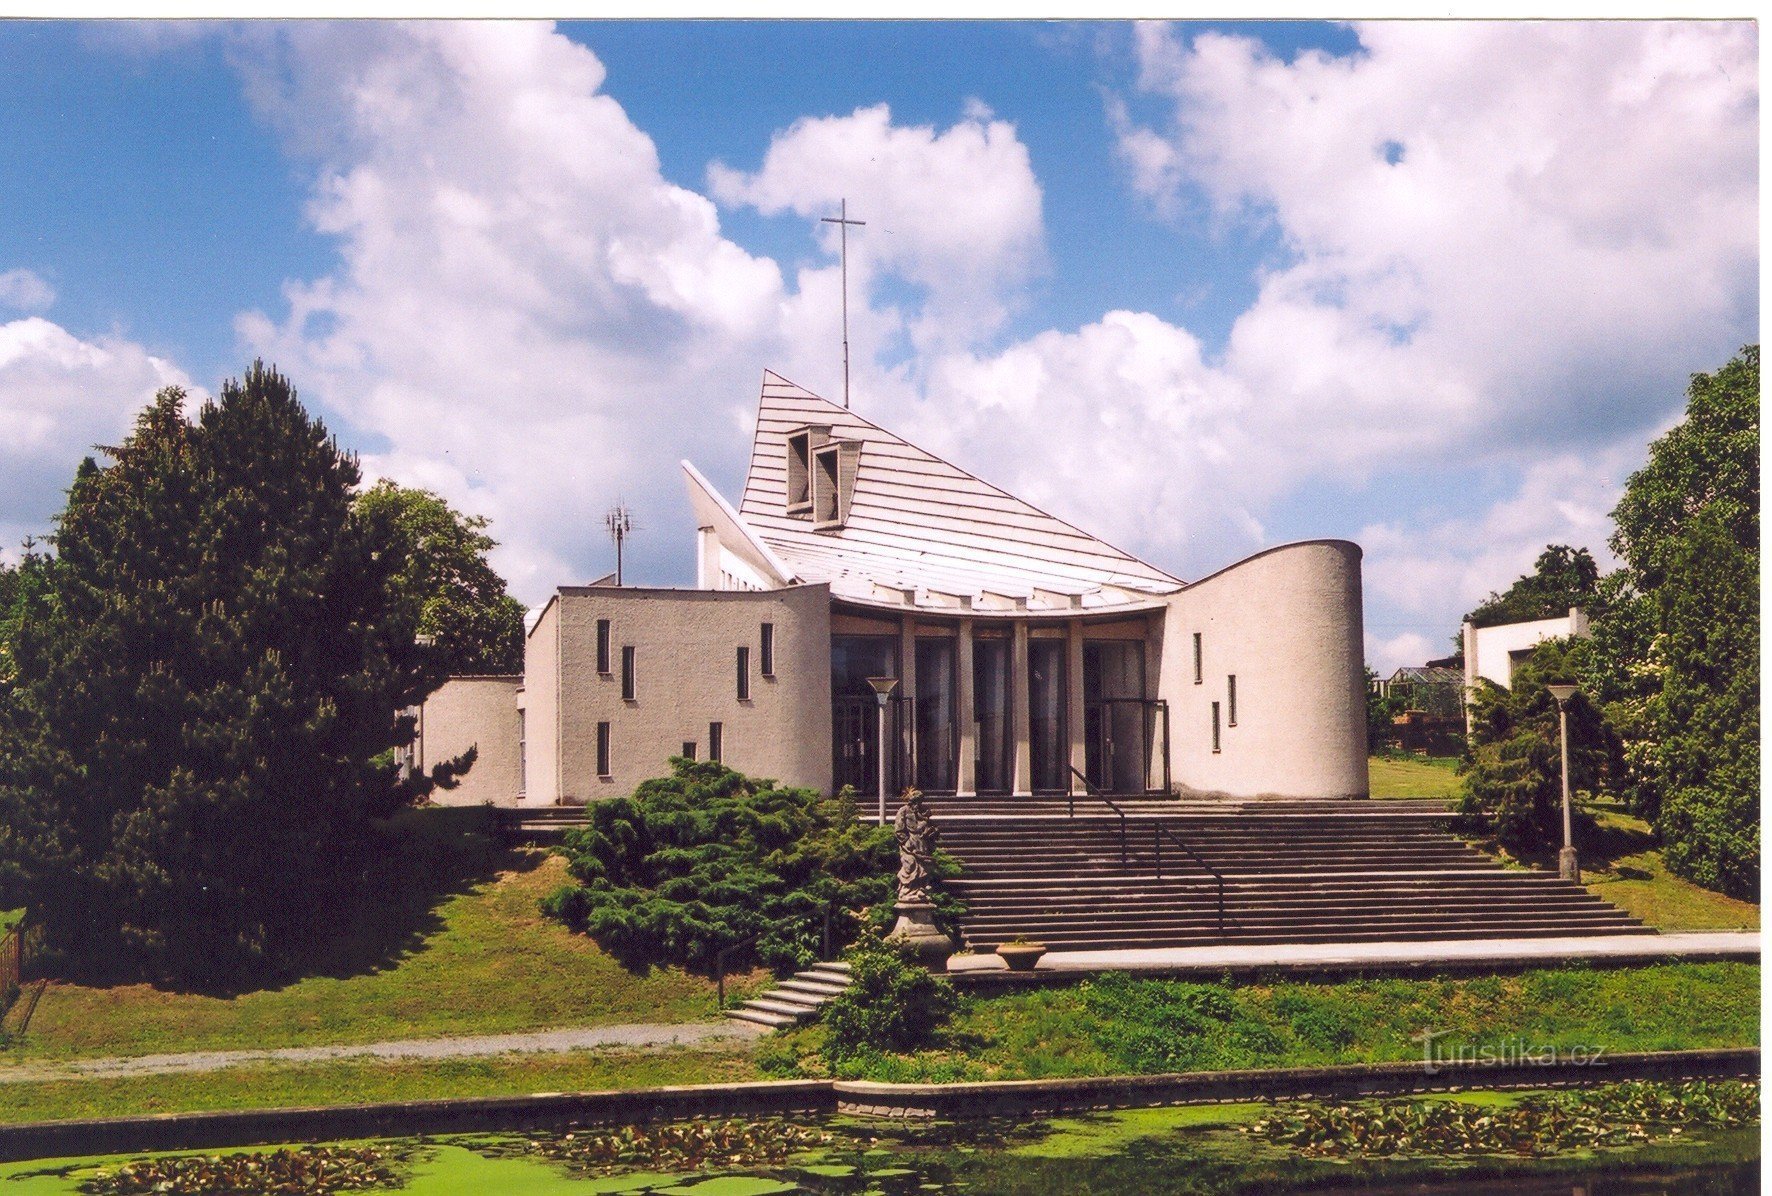 Senetářov - Église de St. Joseph